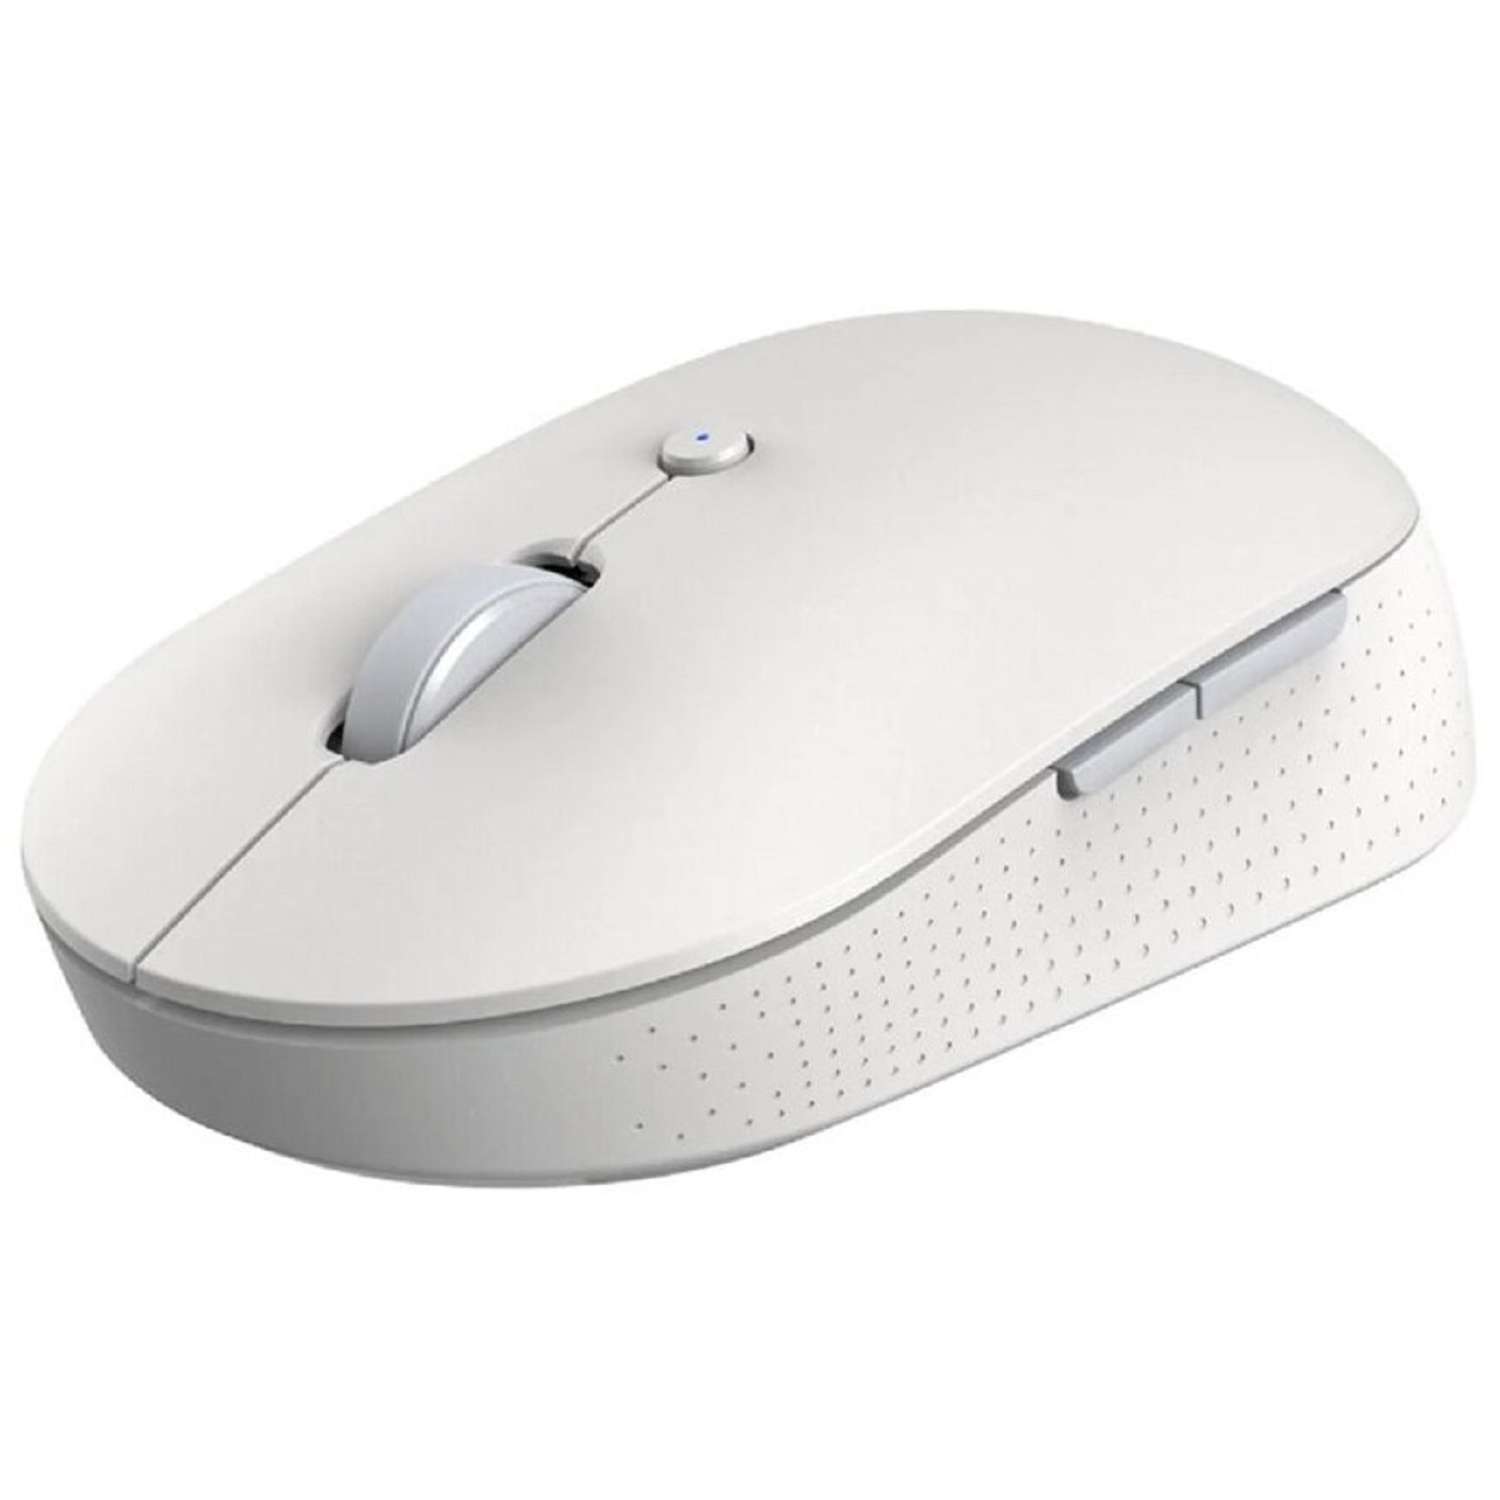 Мышь XIAOMI Mi Dual Mode Wireless Mouse Silent Edition беспроводная 1300 dpi usb белая - фото 6